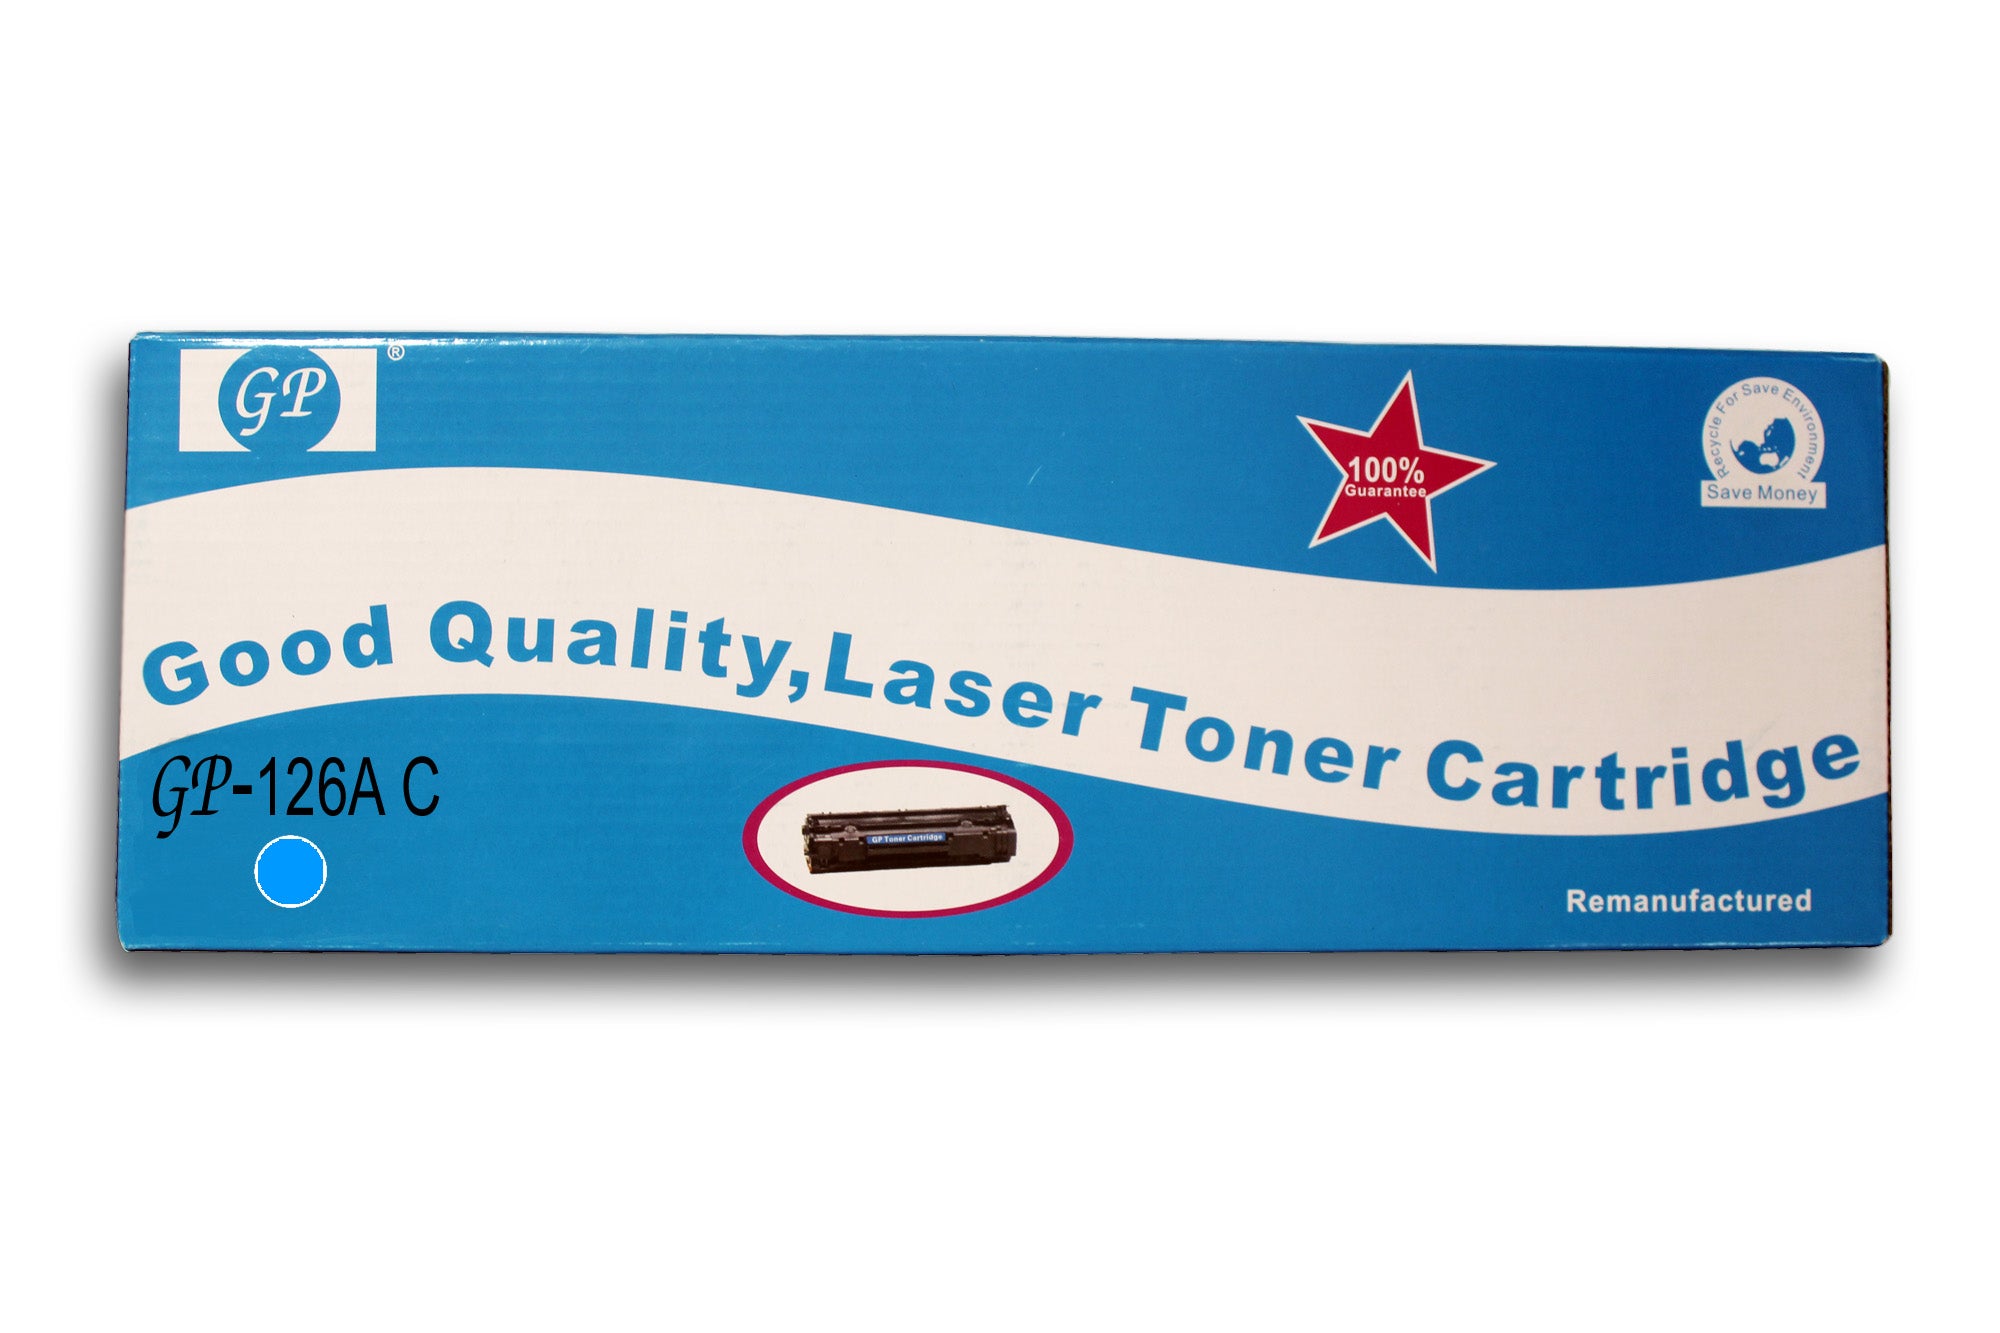 GP  126A Remanufactured Toner Cartridges for HP Colour LaserJet Pro  M175 CP1025 M275